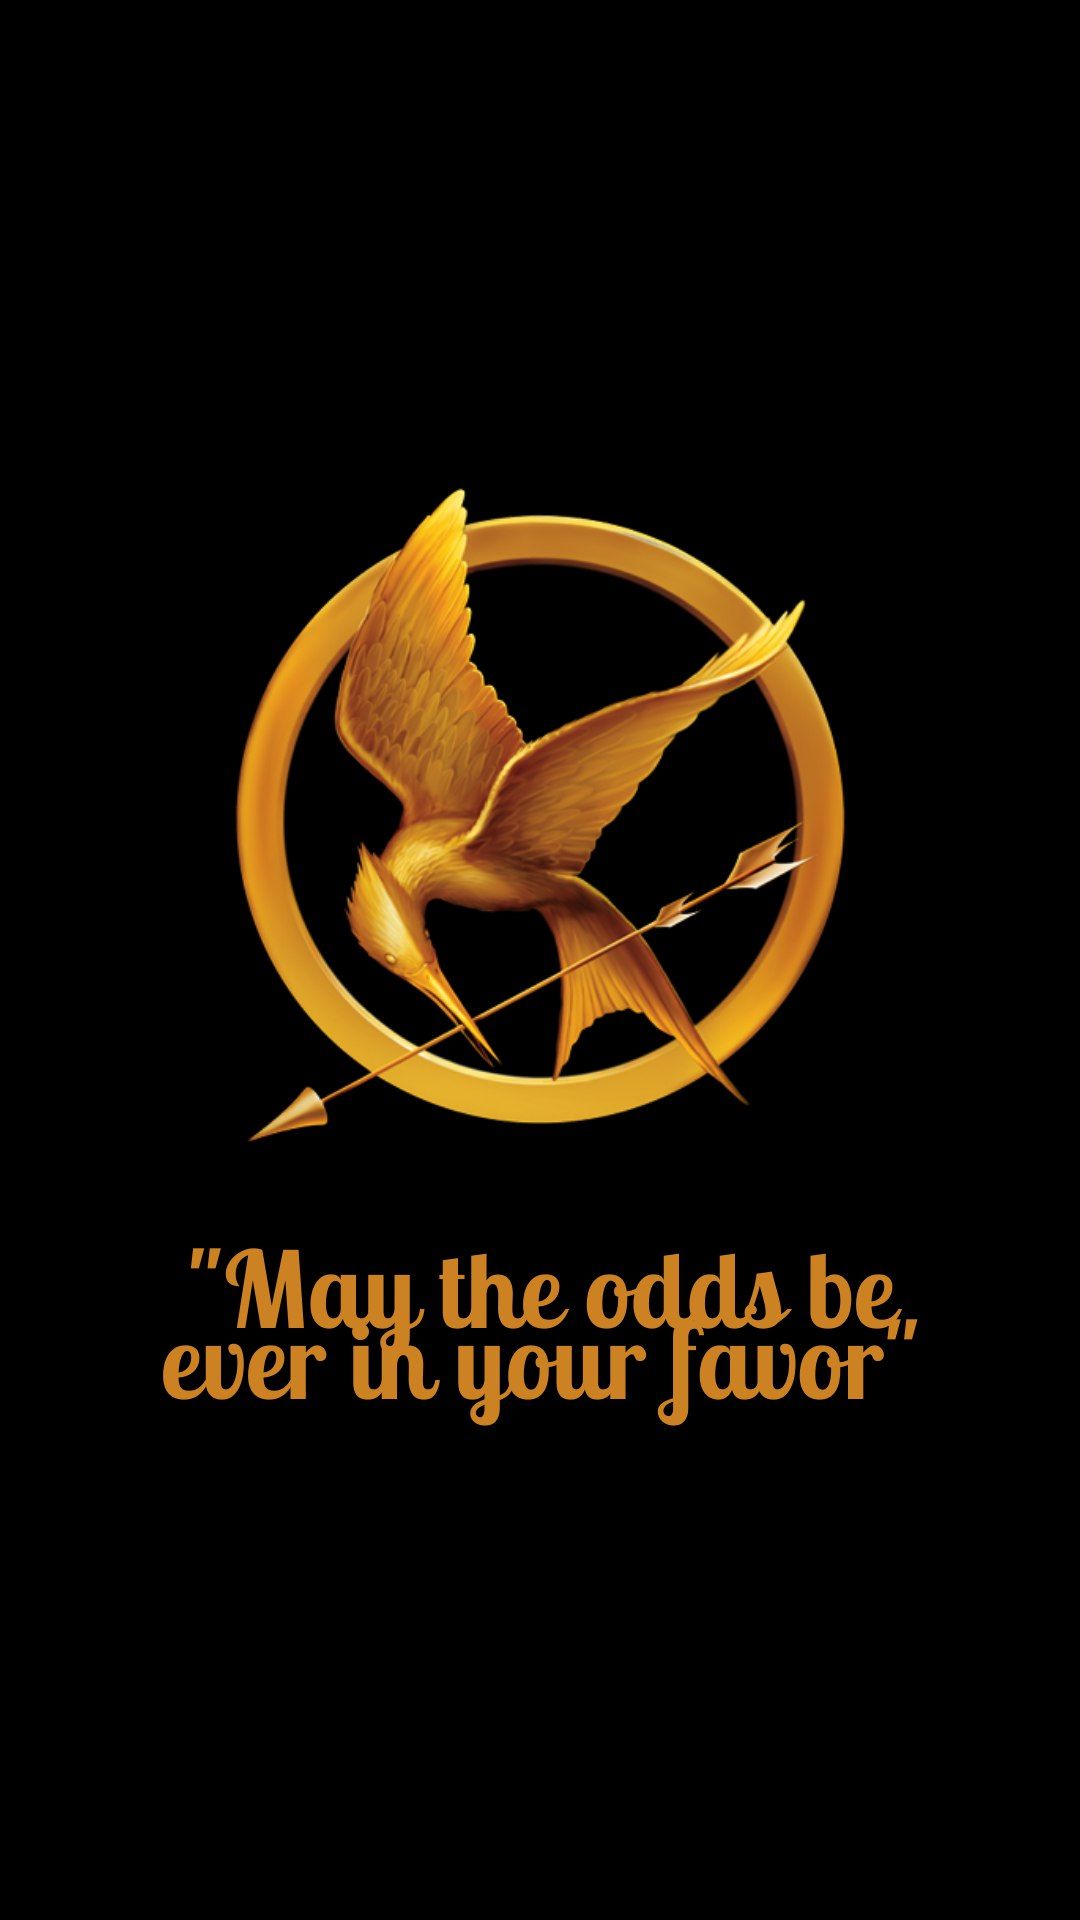 Papel de Parede para Celular Hunger Games